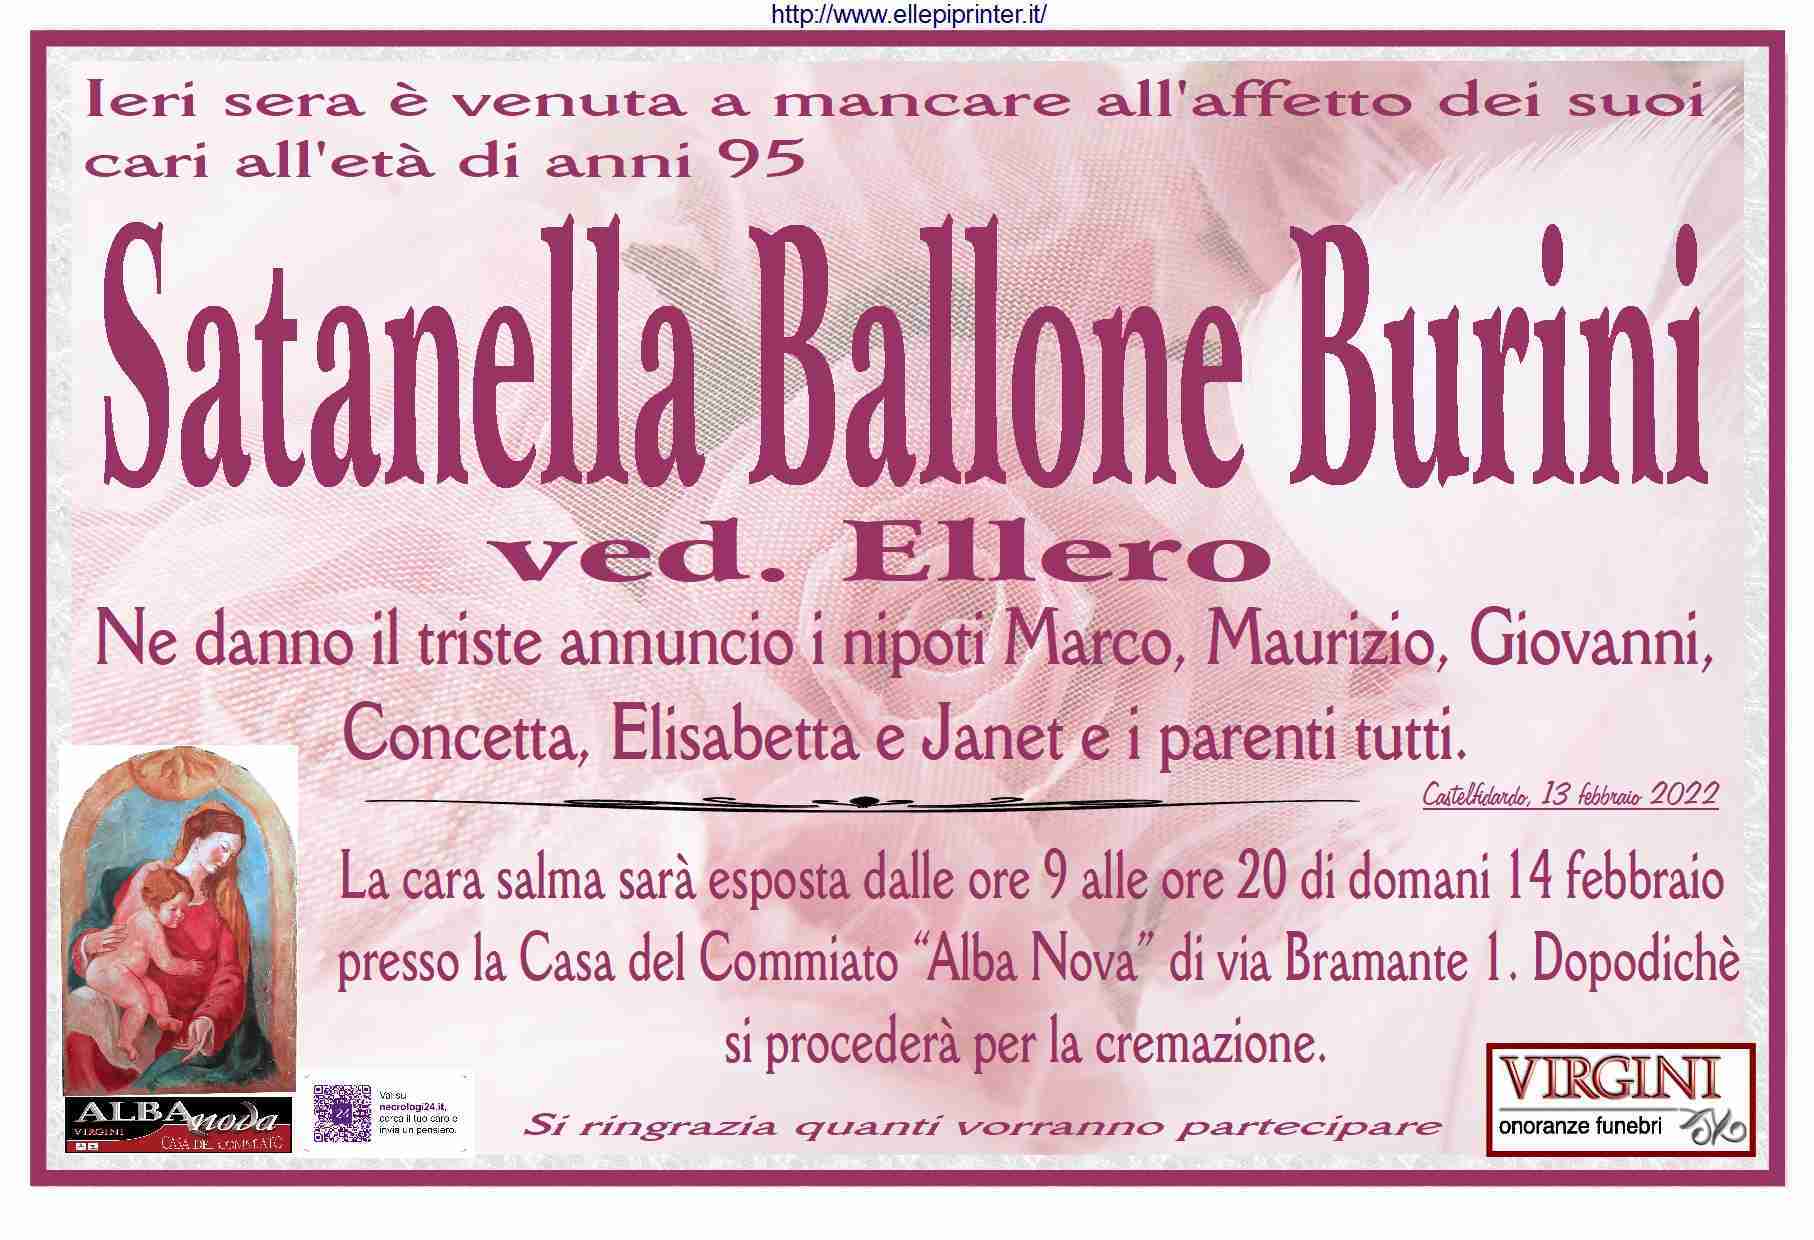 Satanella Ballone Burini